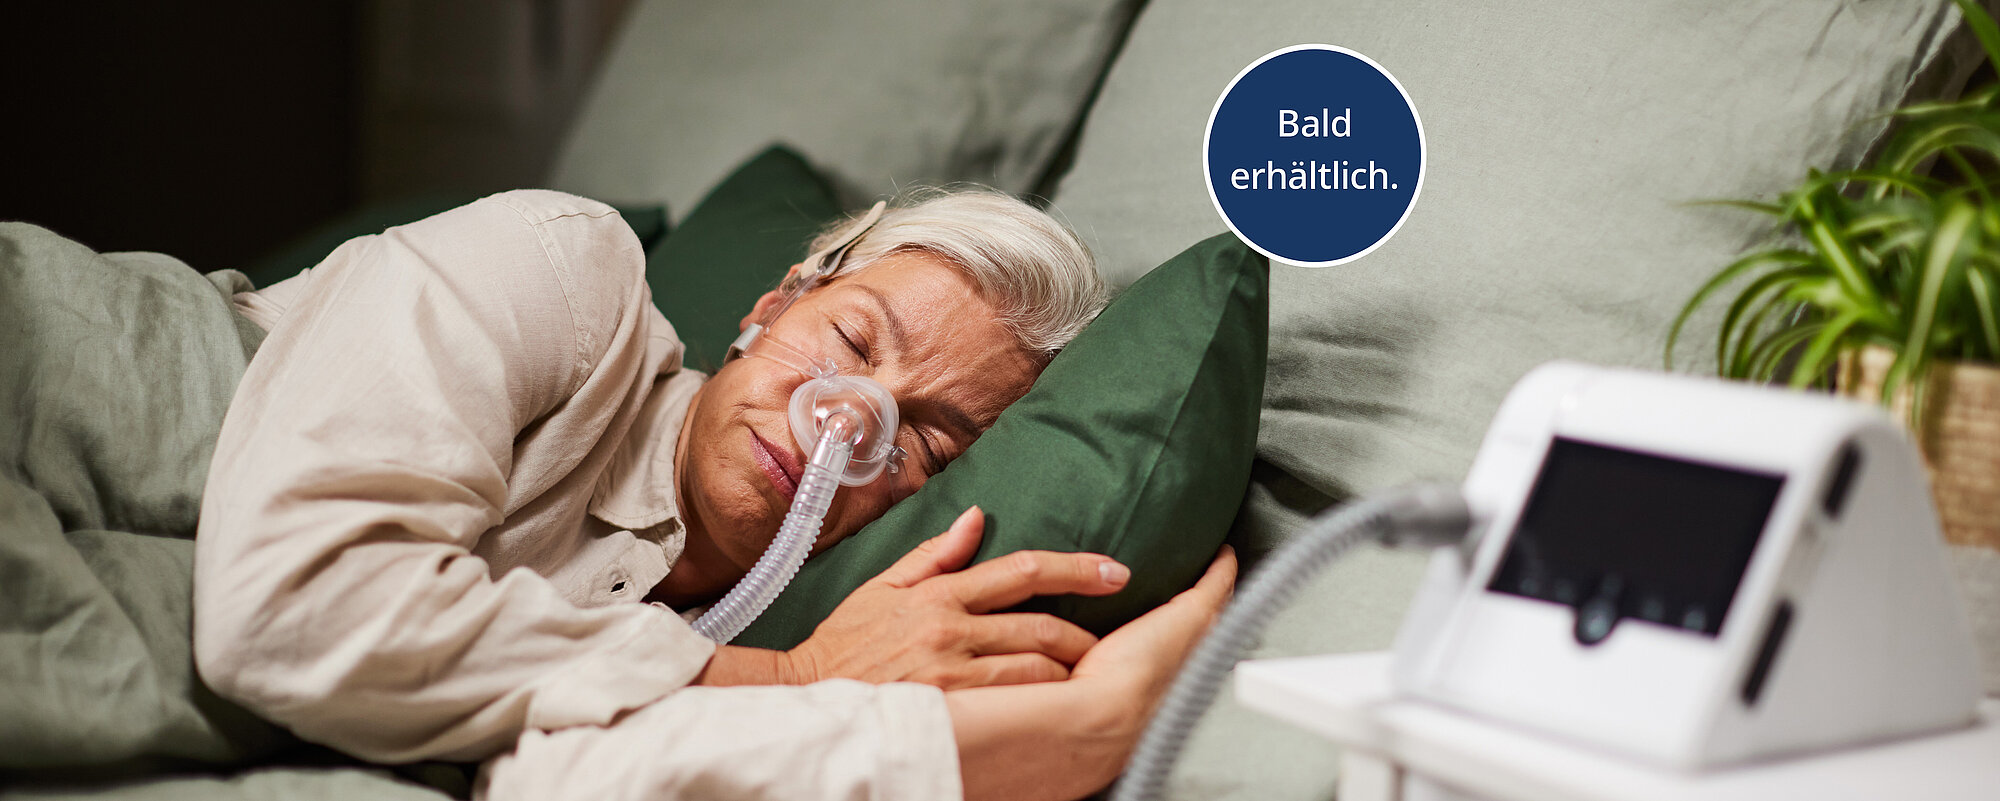 julia mask patient interface nasal sleeping prisma smart max balderhältlich